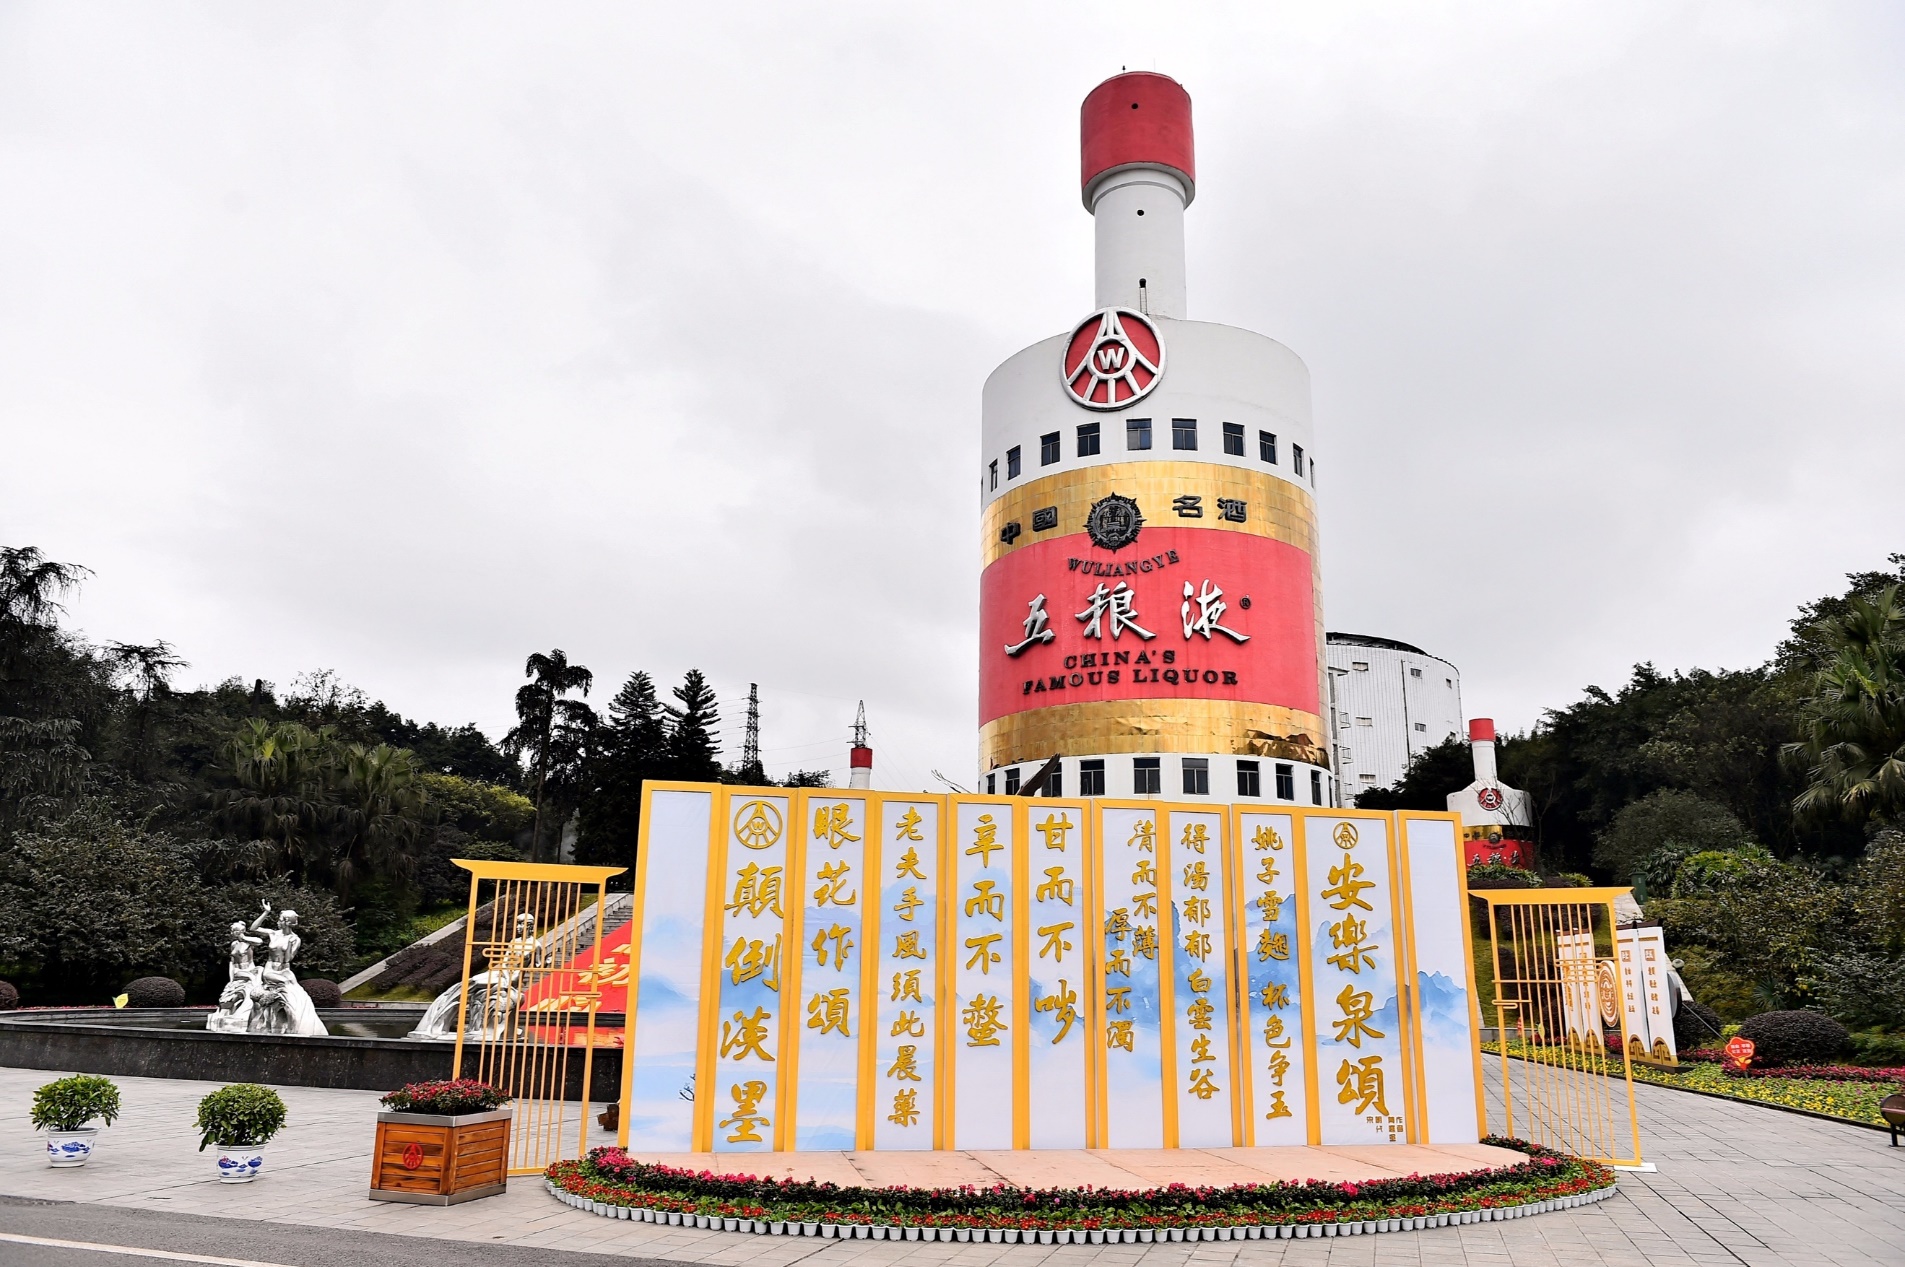 以文化传承致敬经典五粮液盛装迎中国国际名酒博览会